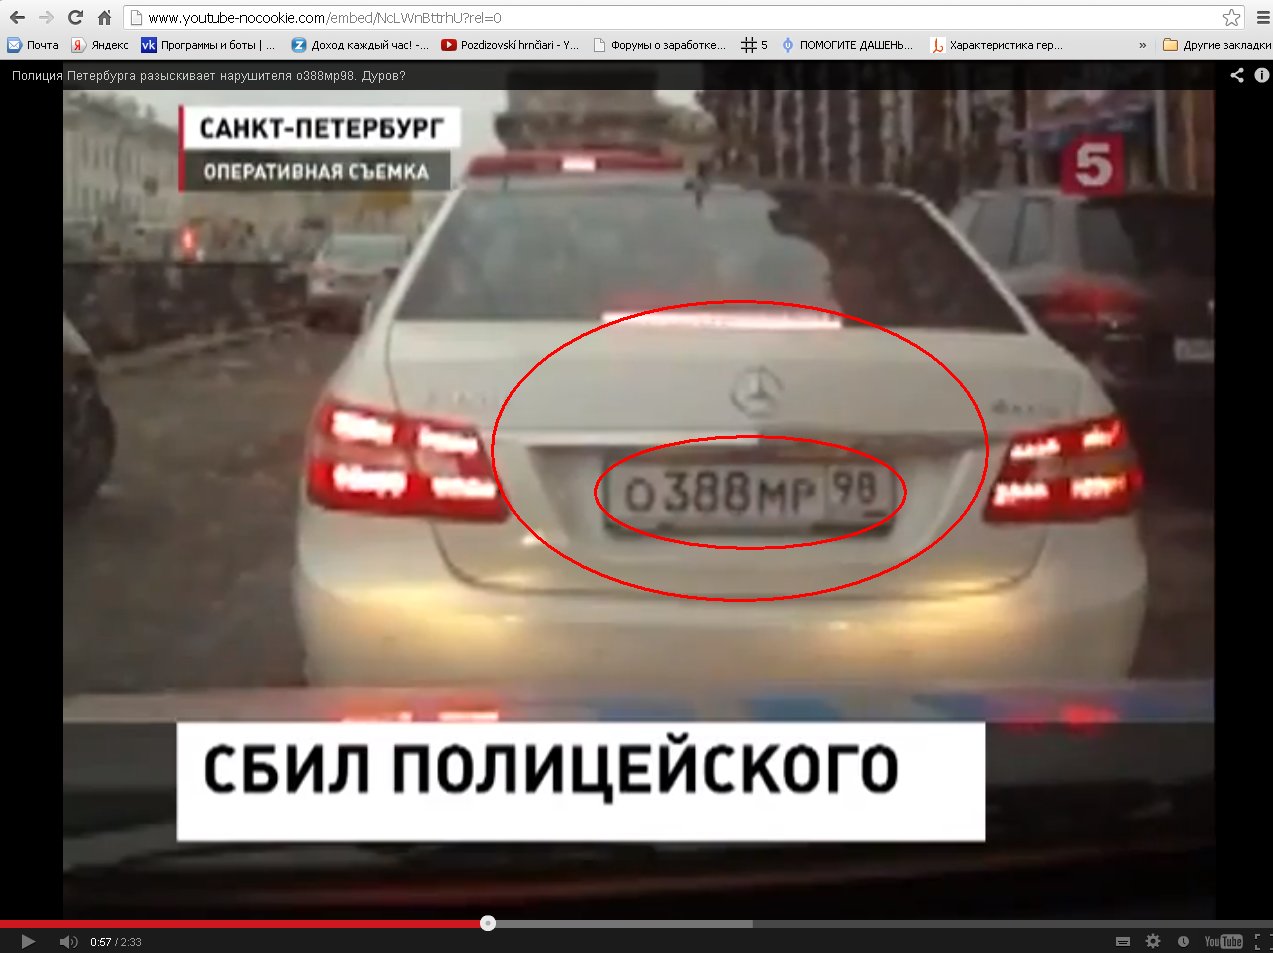 Дуров сбил полицейского